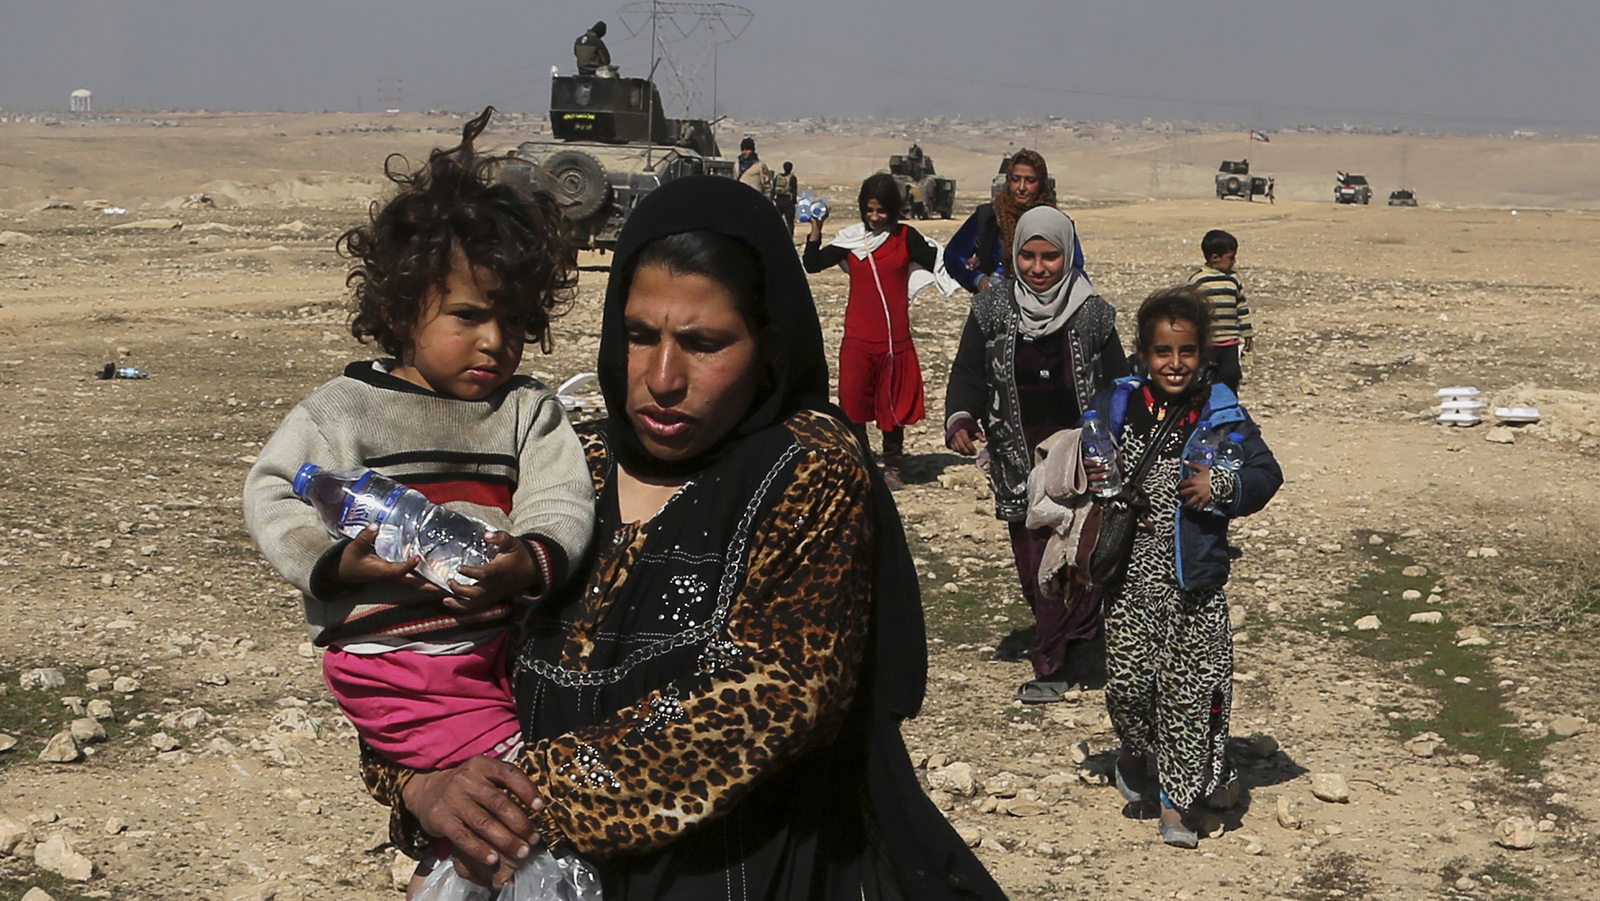 אזרחים עיראקיים עוזבים את בתיהם במוסול בעקבות הגעת כוחות צבא עיראק ותחילת הקרבות לשחרור העיר מידי דעא&quot;ש (צילום: AP Photo/ Khalid Mohammed).